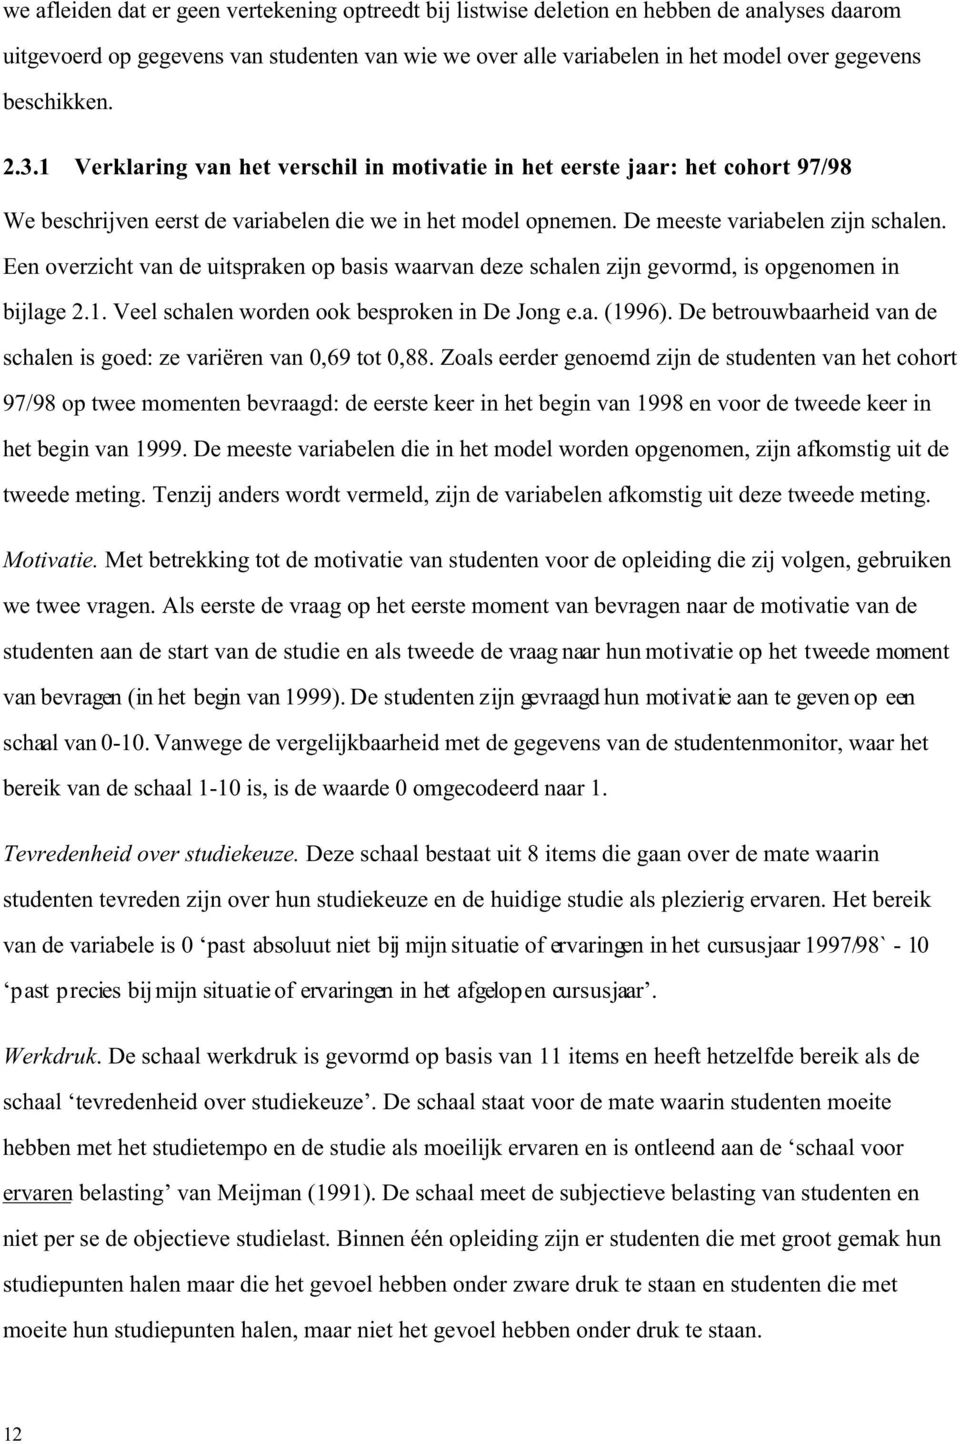 Een overzicht van de uitspraken op basis waarvan deze schalen zijn gevormd, is opgenomen in bijlage 2.1. Veel schalen worden ook besproken in De Jong e.a. (1996).